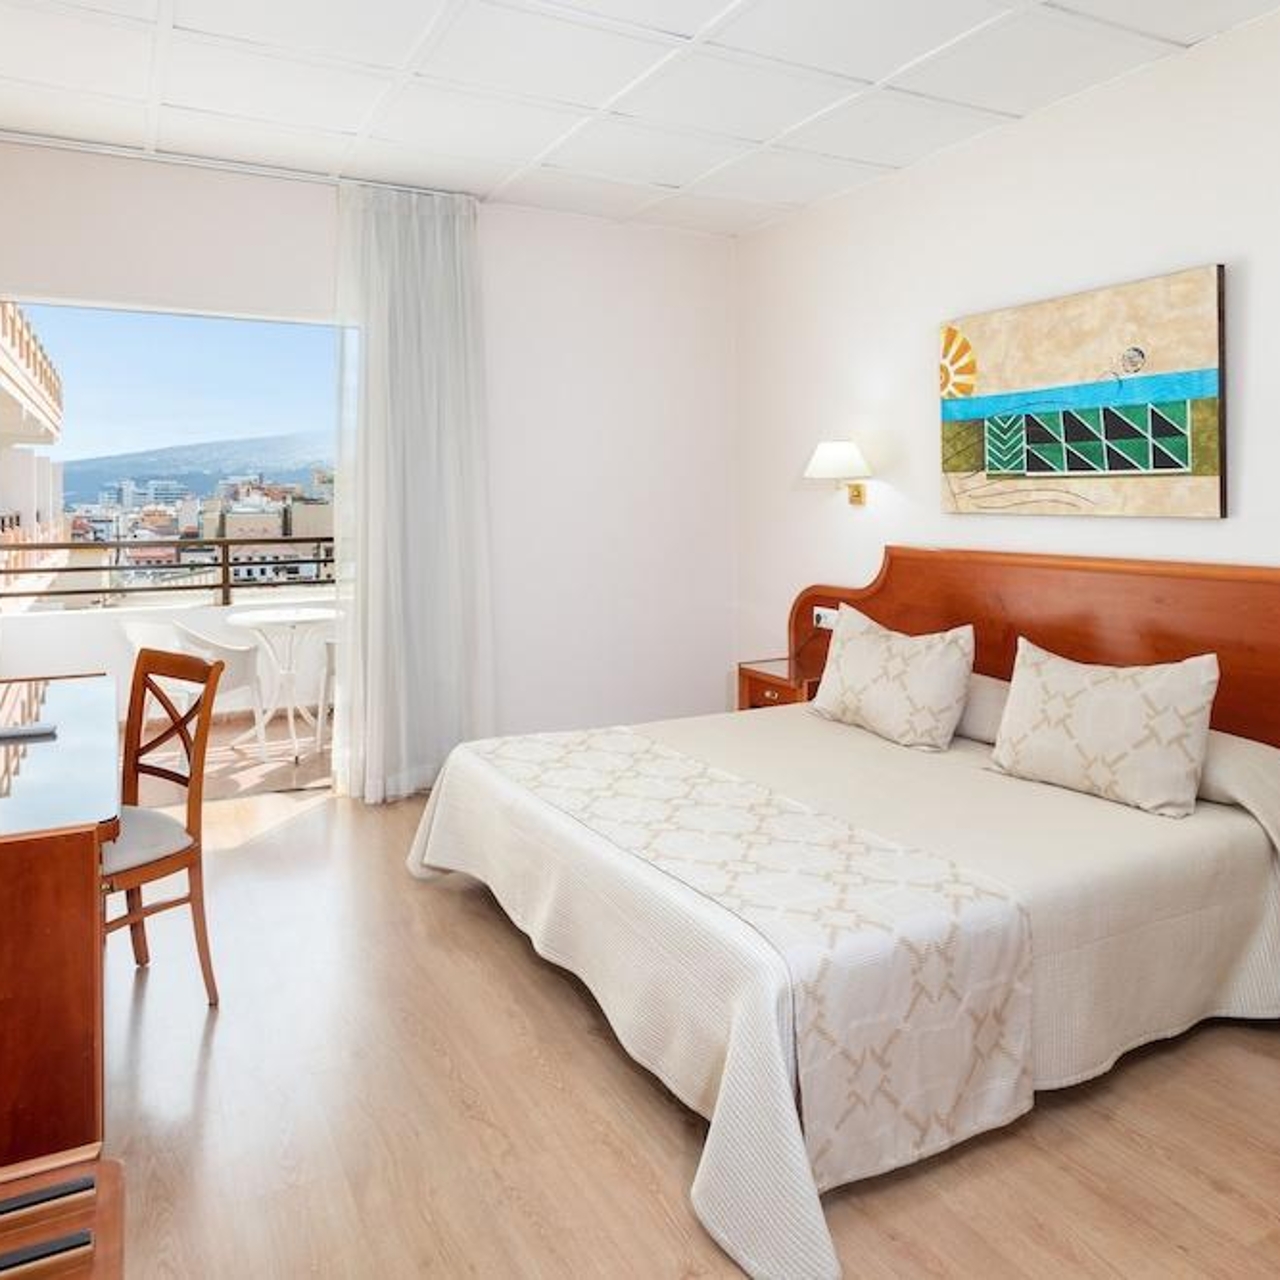 Hotel Trianflor - 4 HRS star hotel in Puerto de la Cruz (Canary Islands)